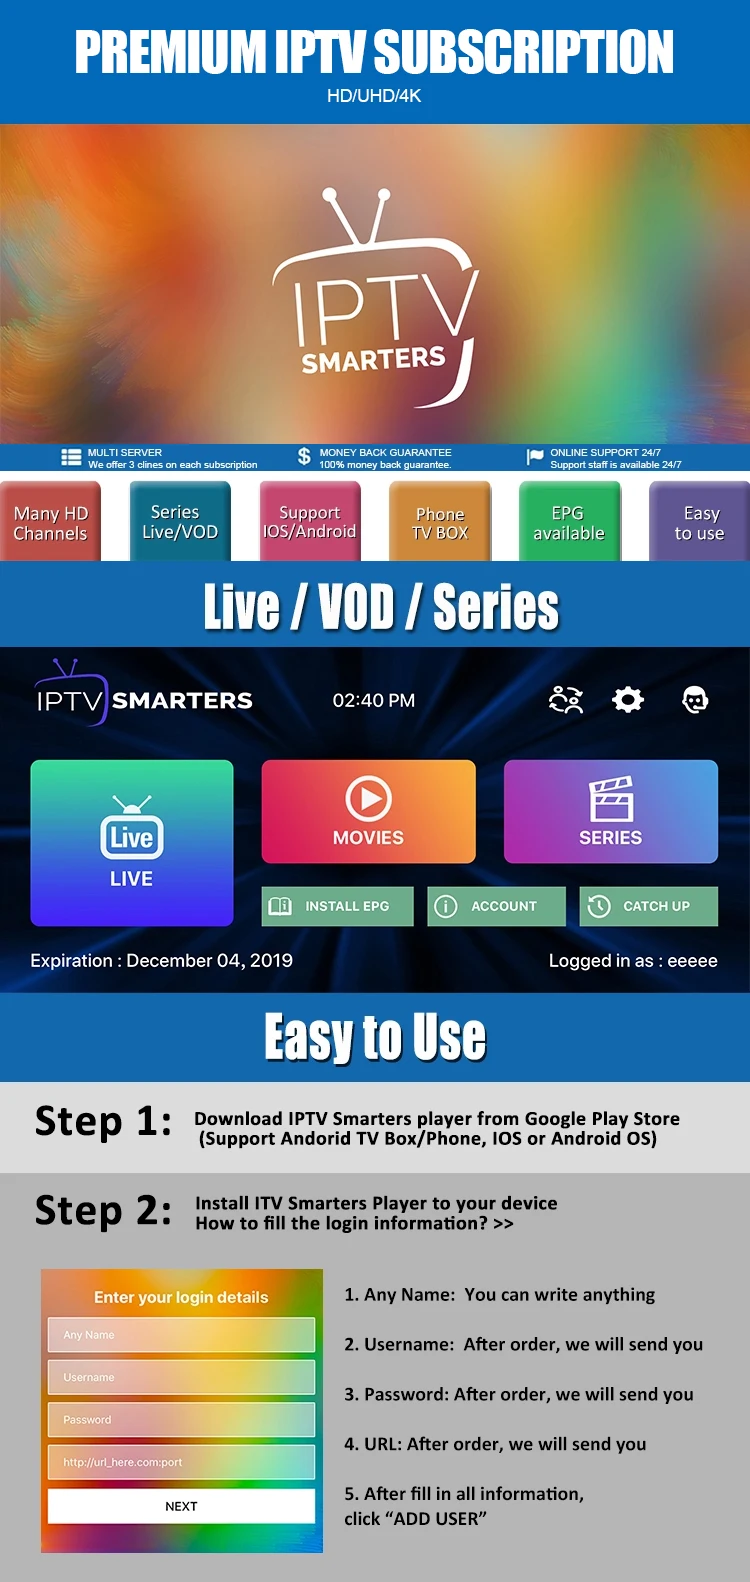 Великобритания IPTV M3U IP tv 7000+ Live КАНАЛЫ для m3u mag box smart tv Канада ip tv Бразилия ip tv M3U код спорт взрослых бесплатный тест